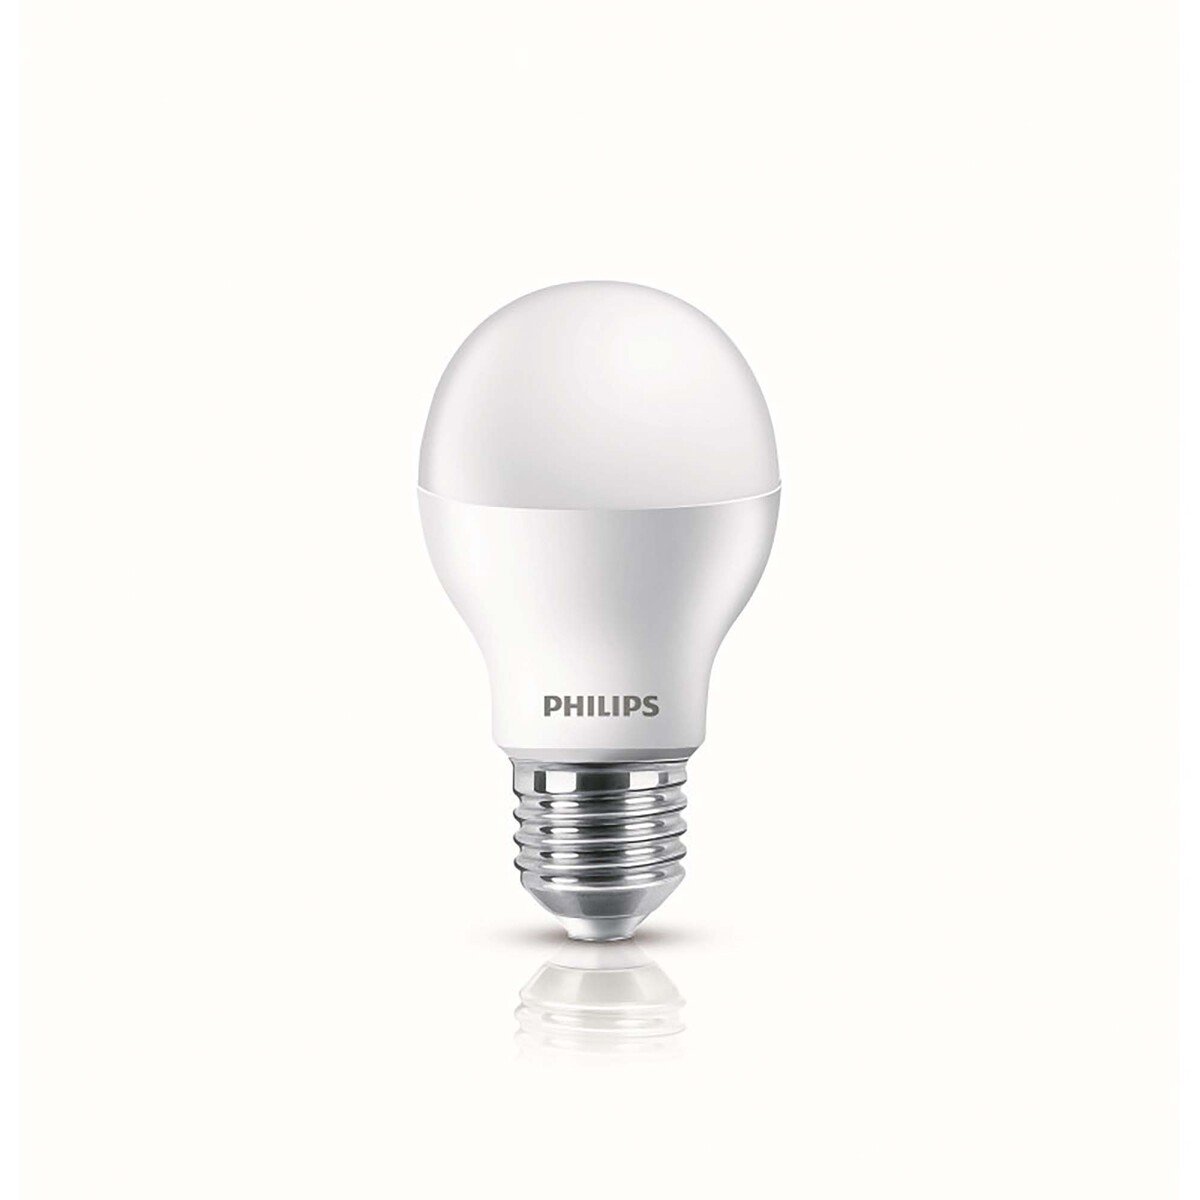 Philips LED Bulb 13W E27 3000K Warm White